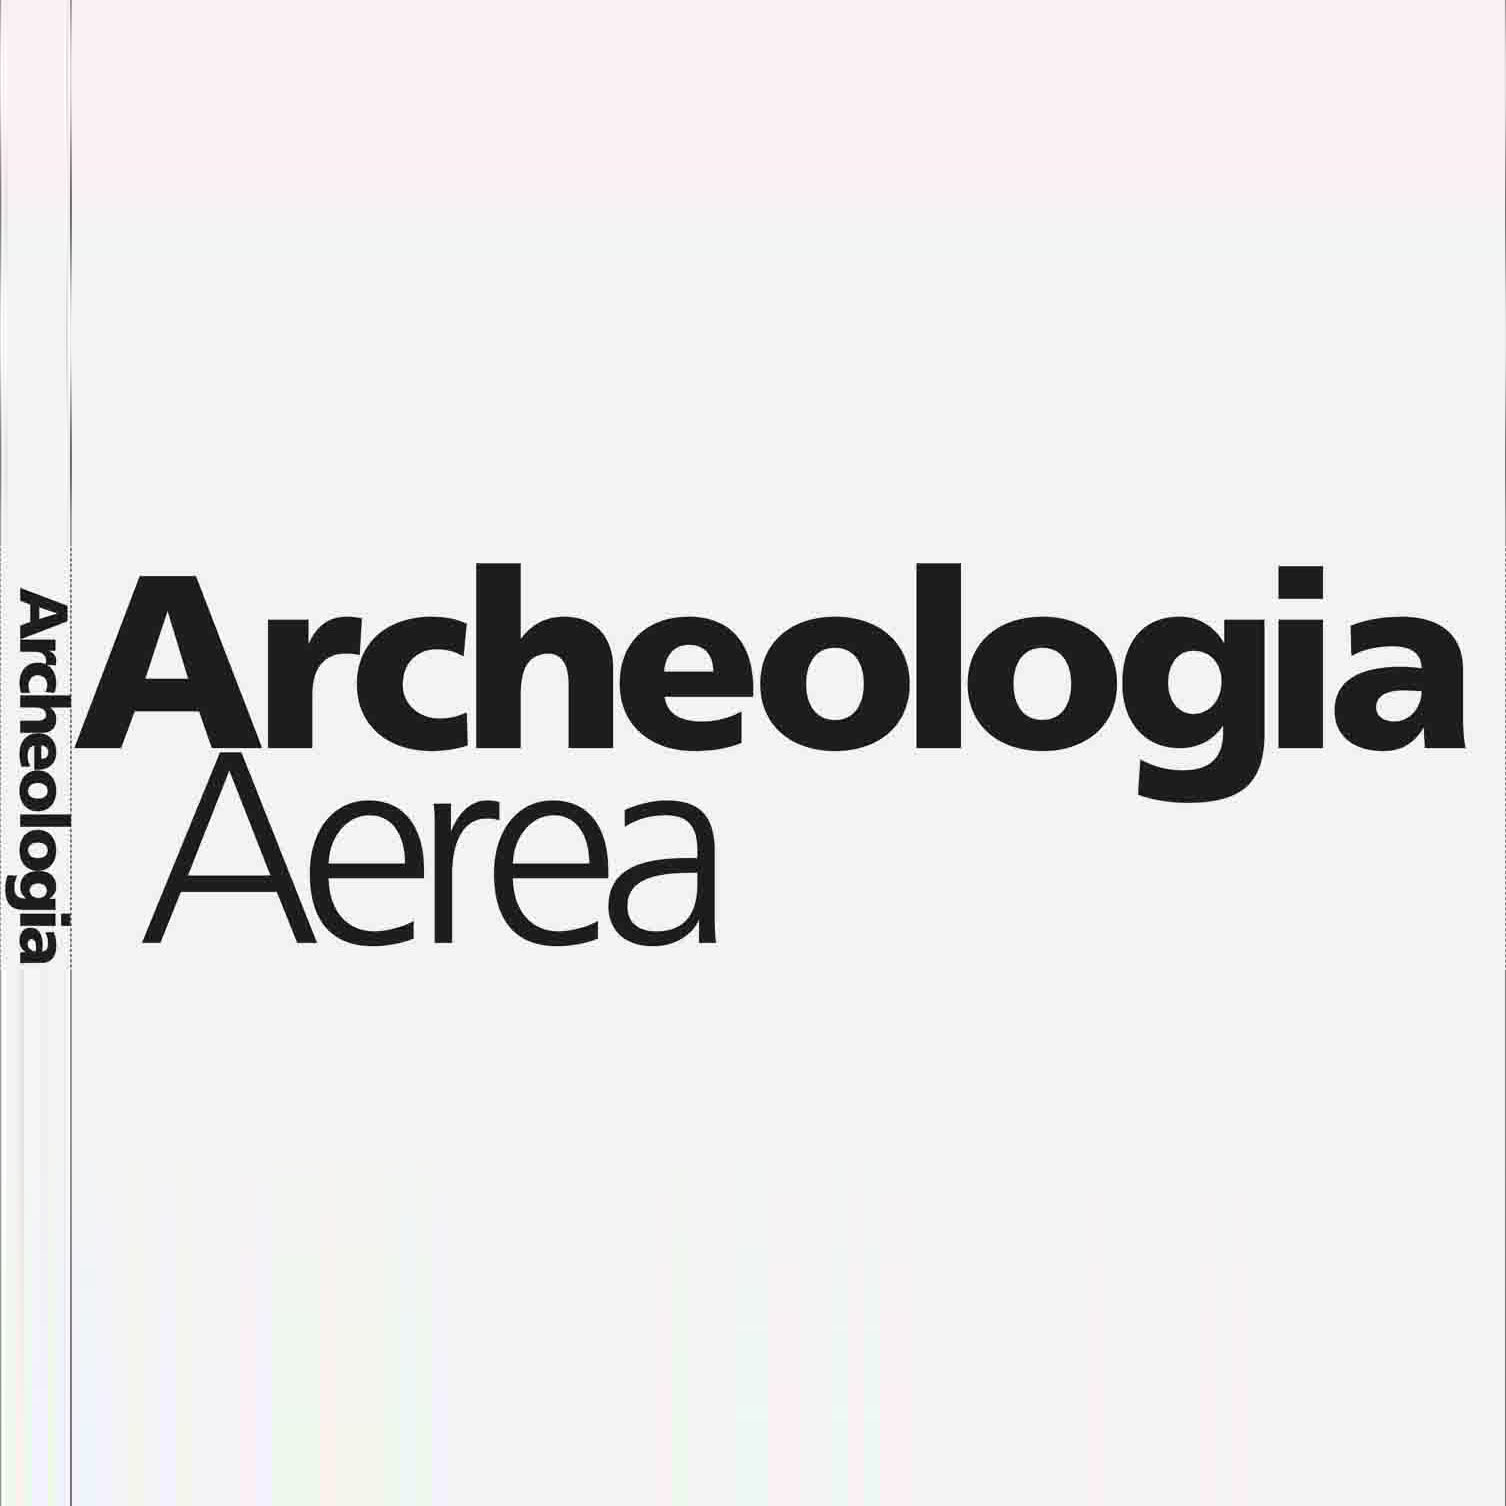 Archeologia Aerea